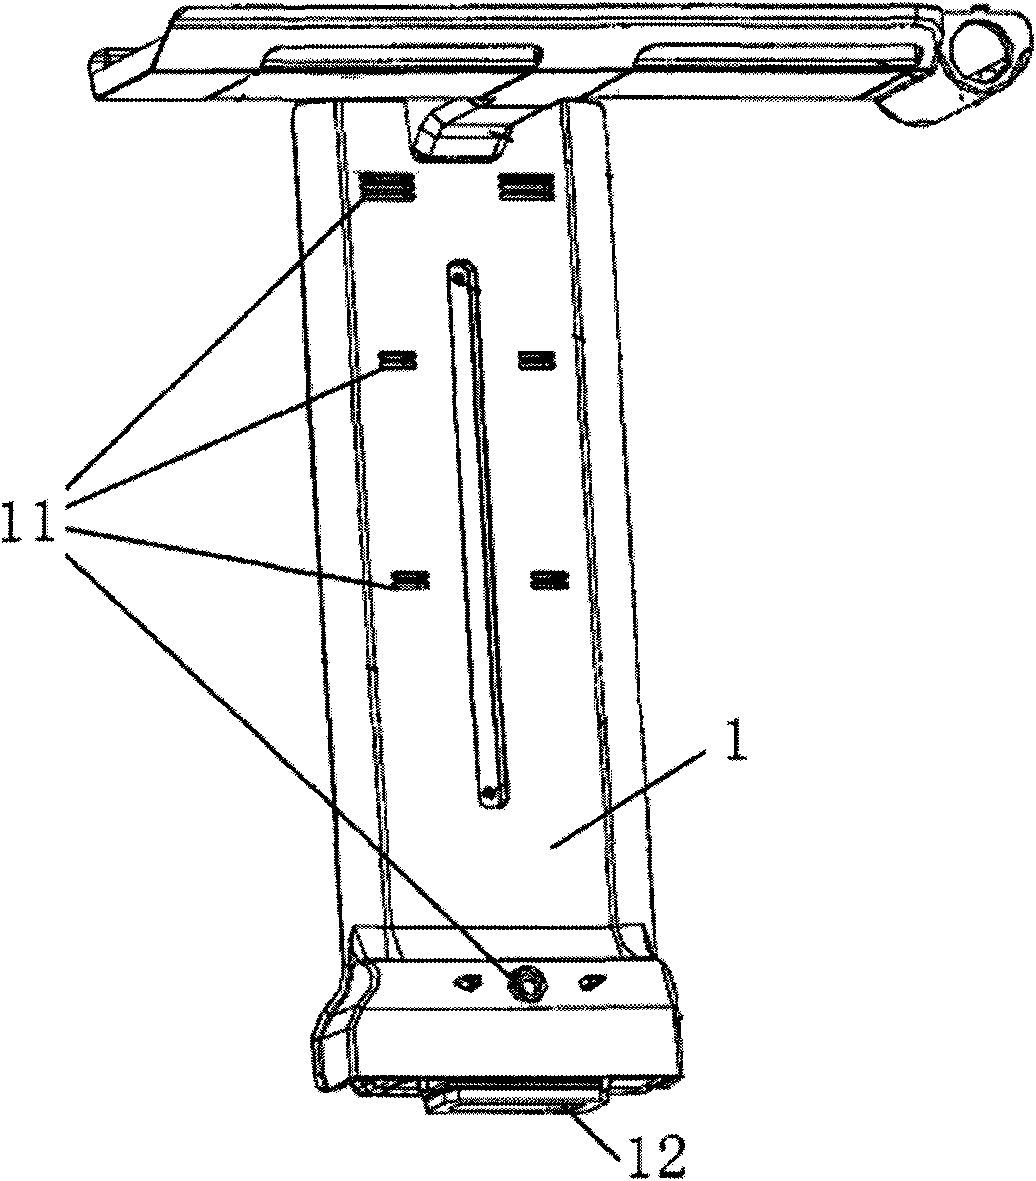 Air flue device of refrigerator and refrigerator